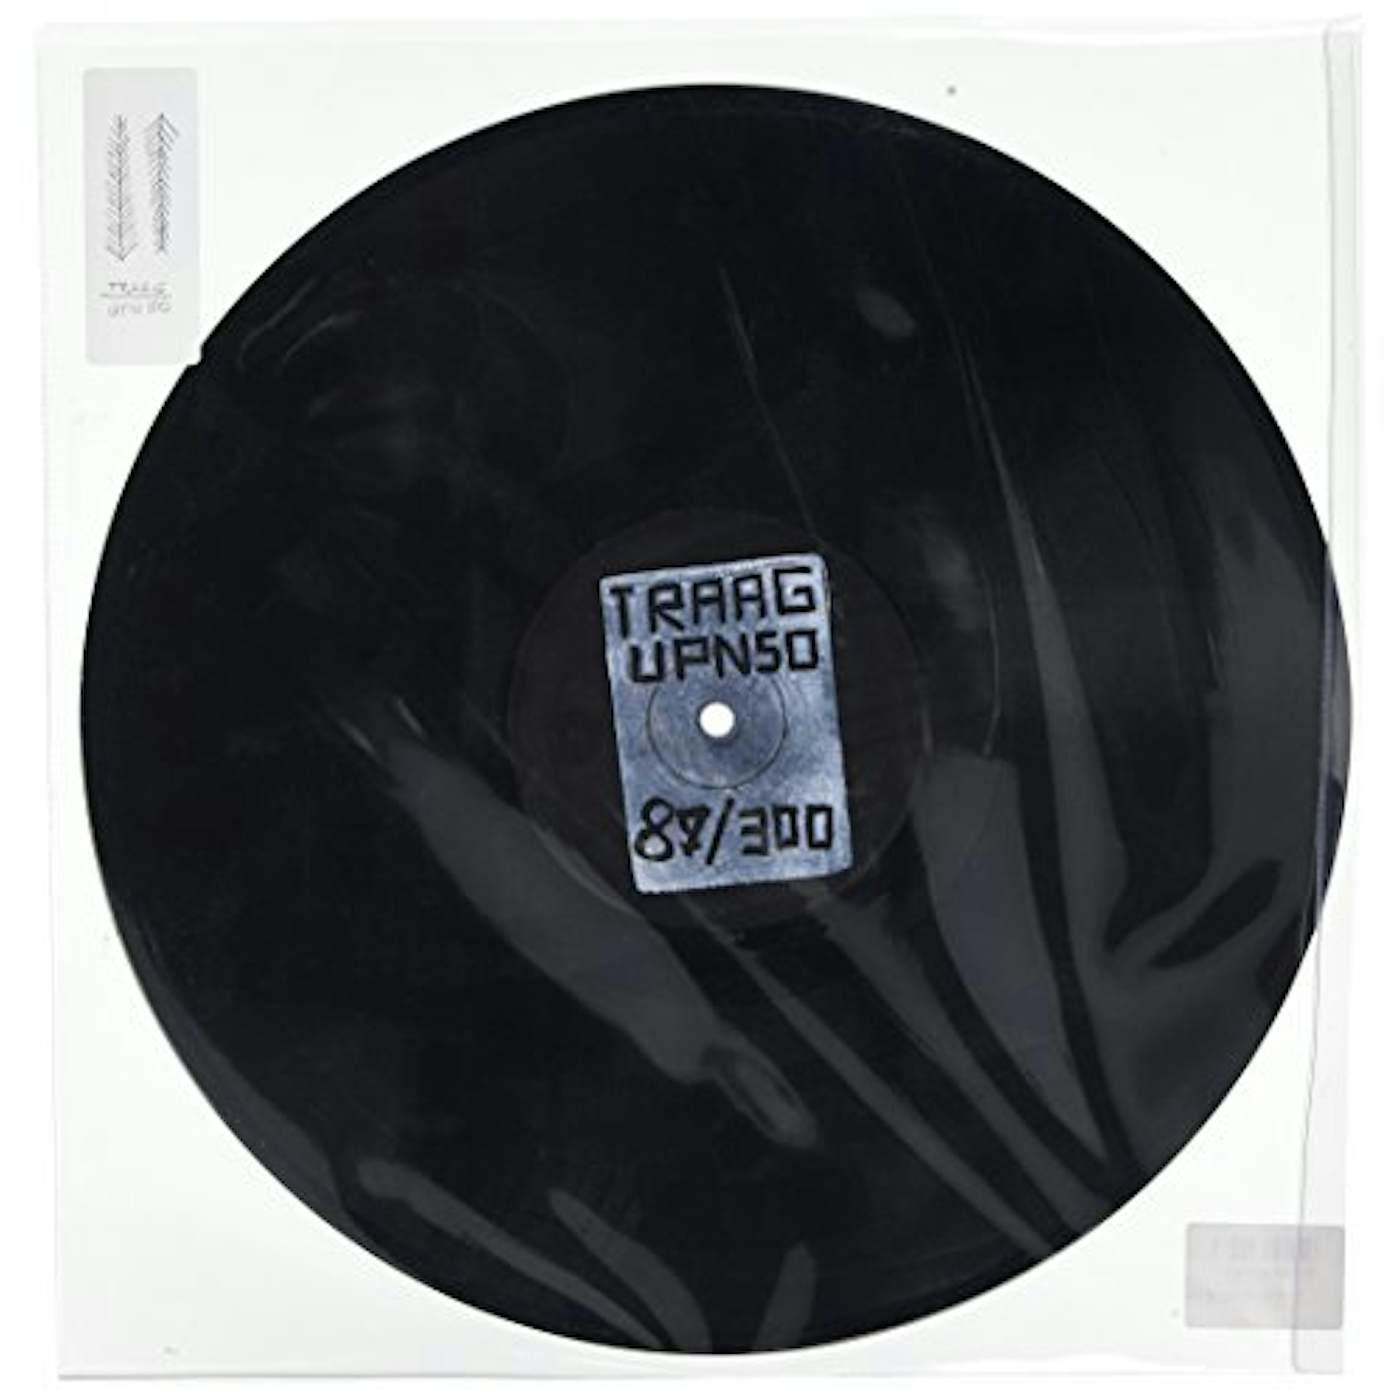 Traag UPN 50 Vinyl Record